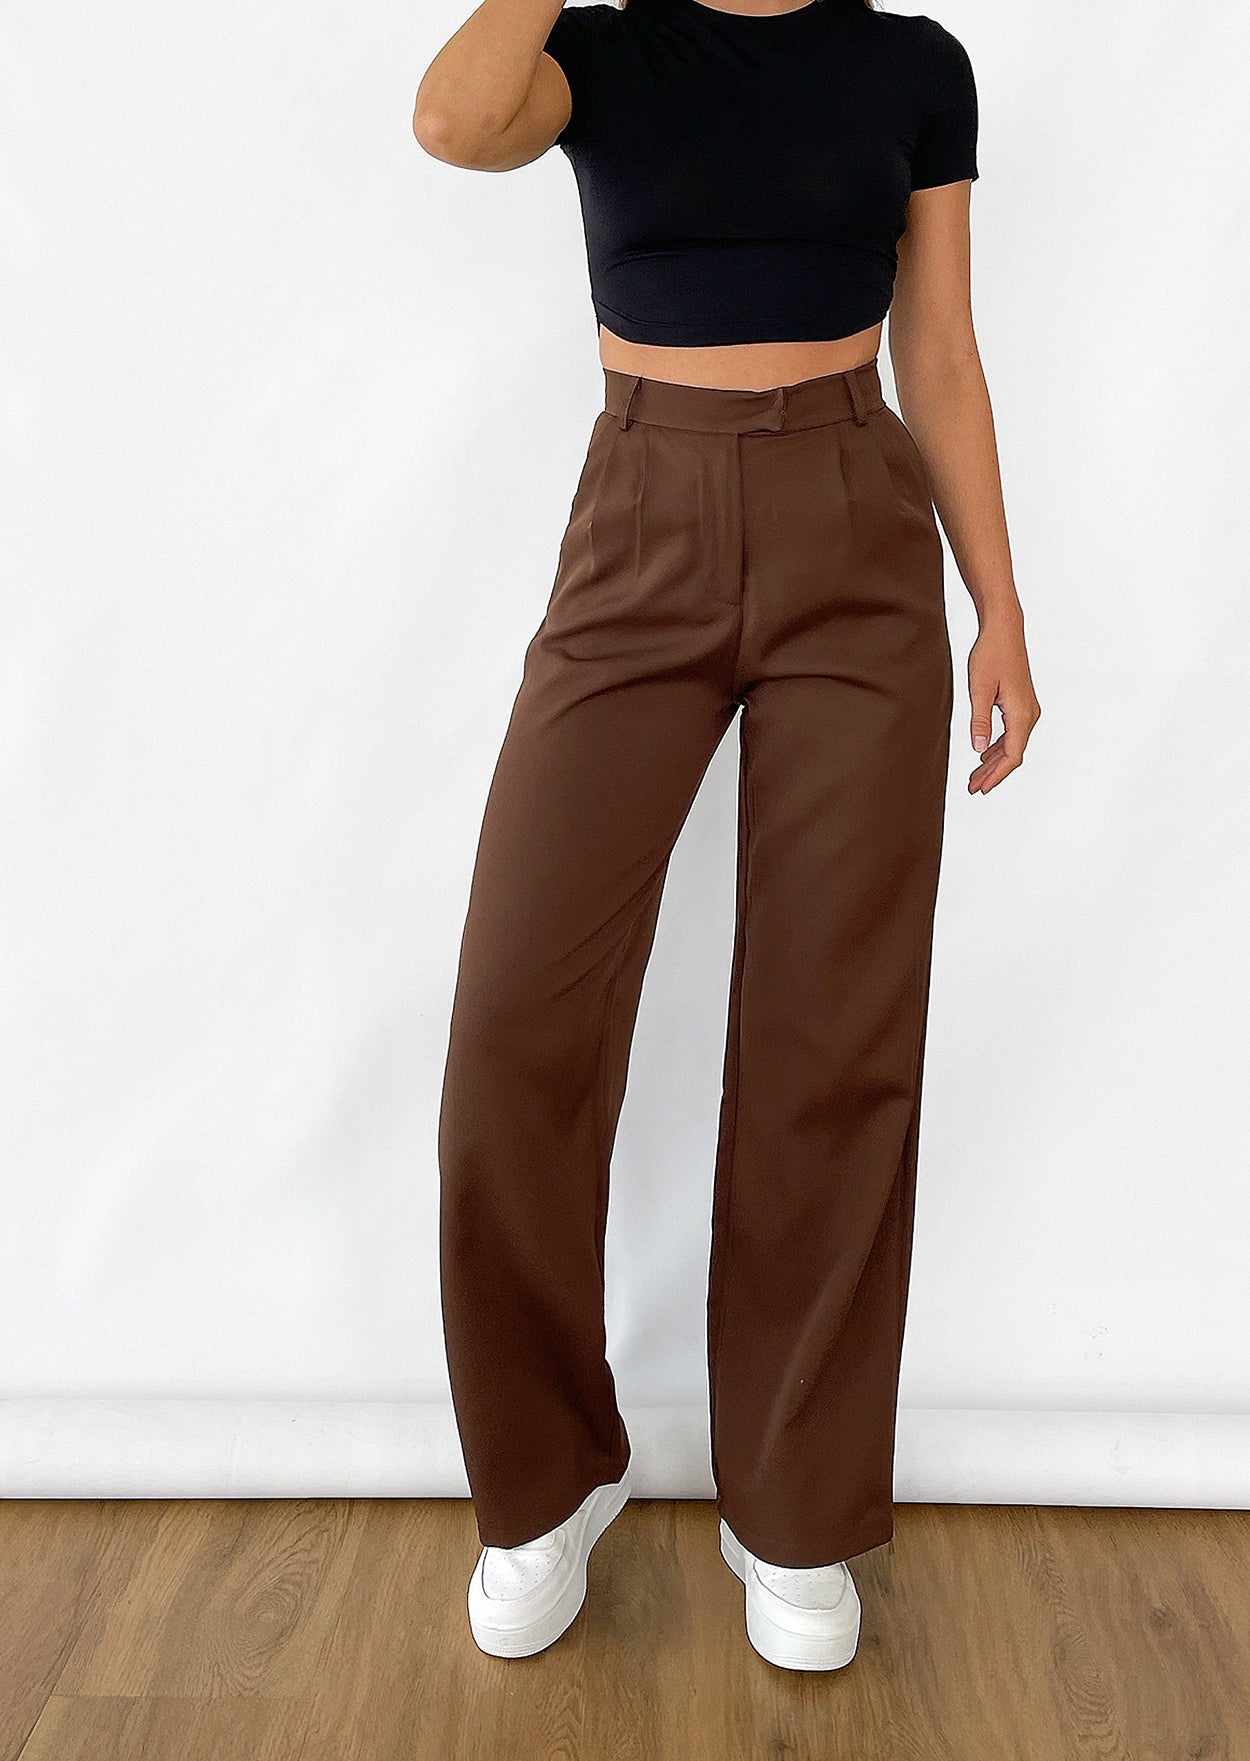 Wide leg pants in brown